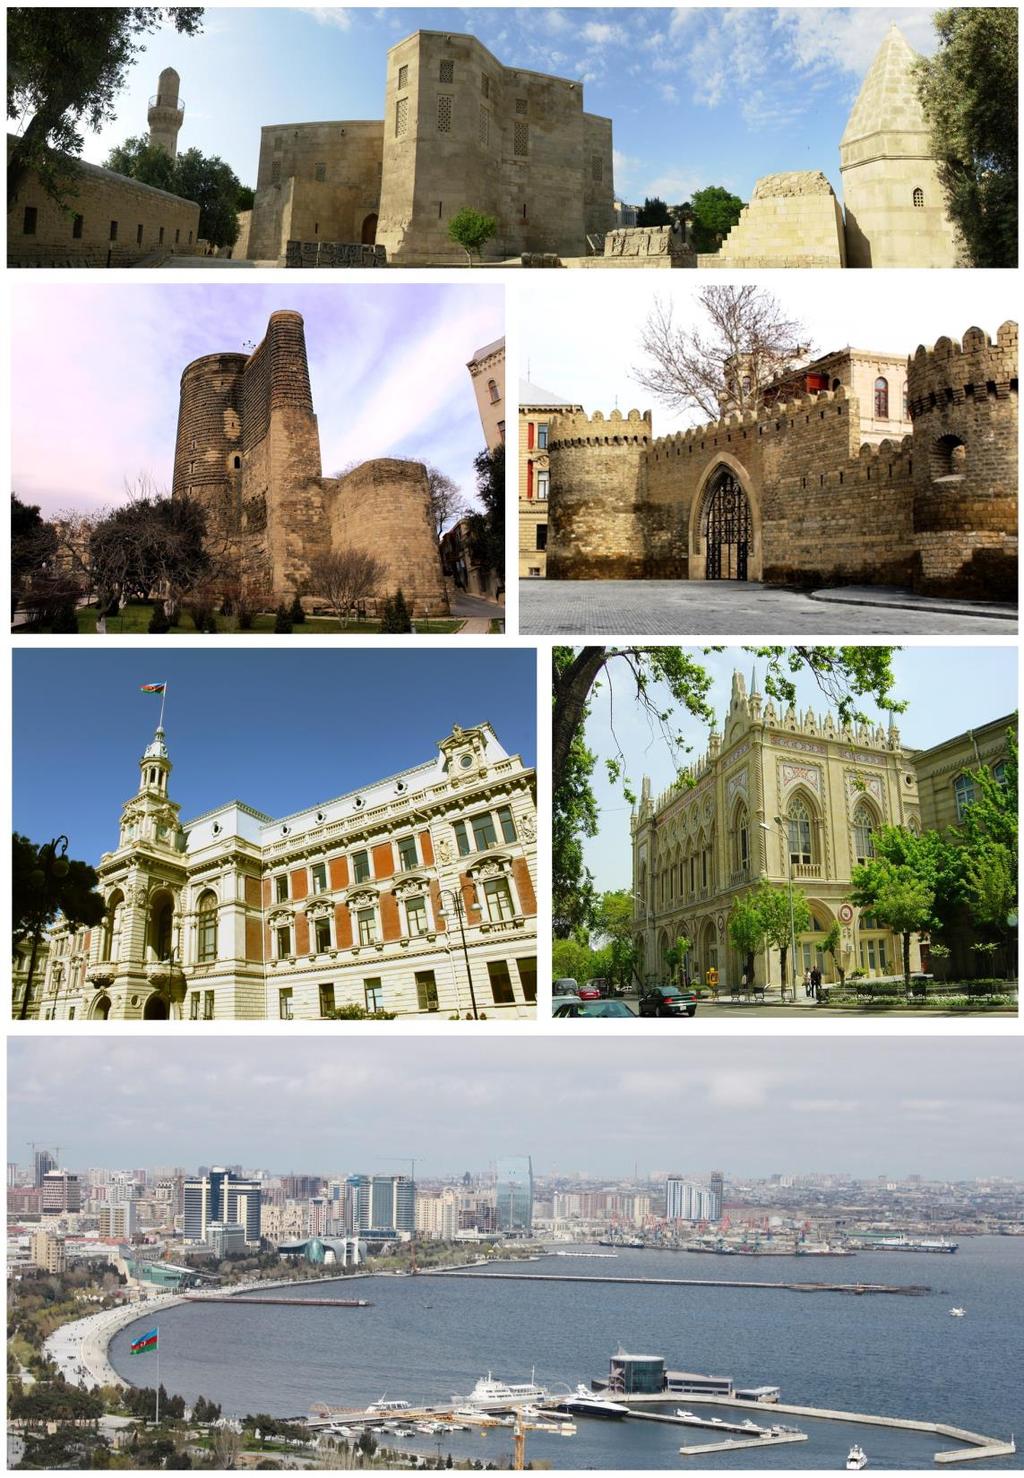 Baku -